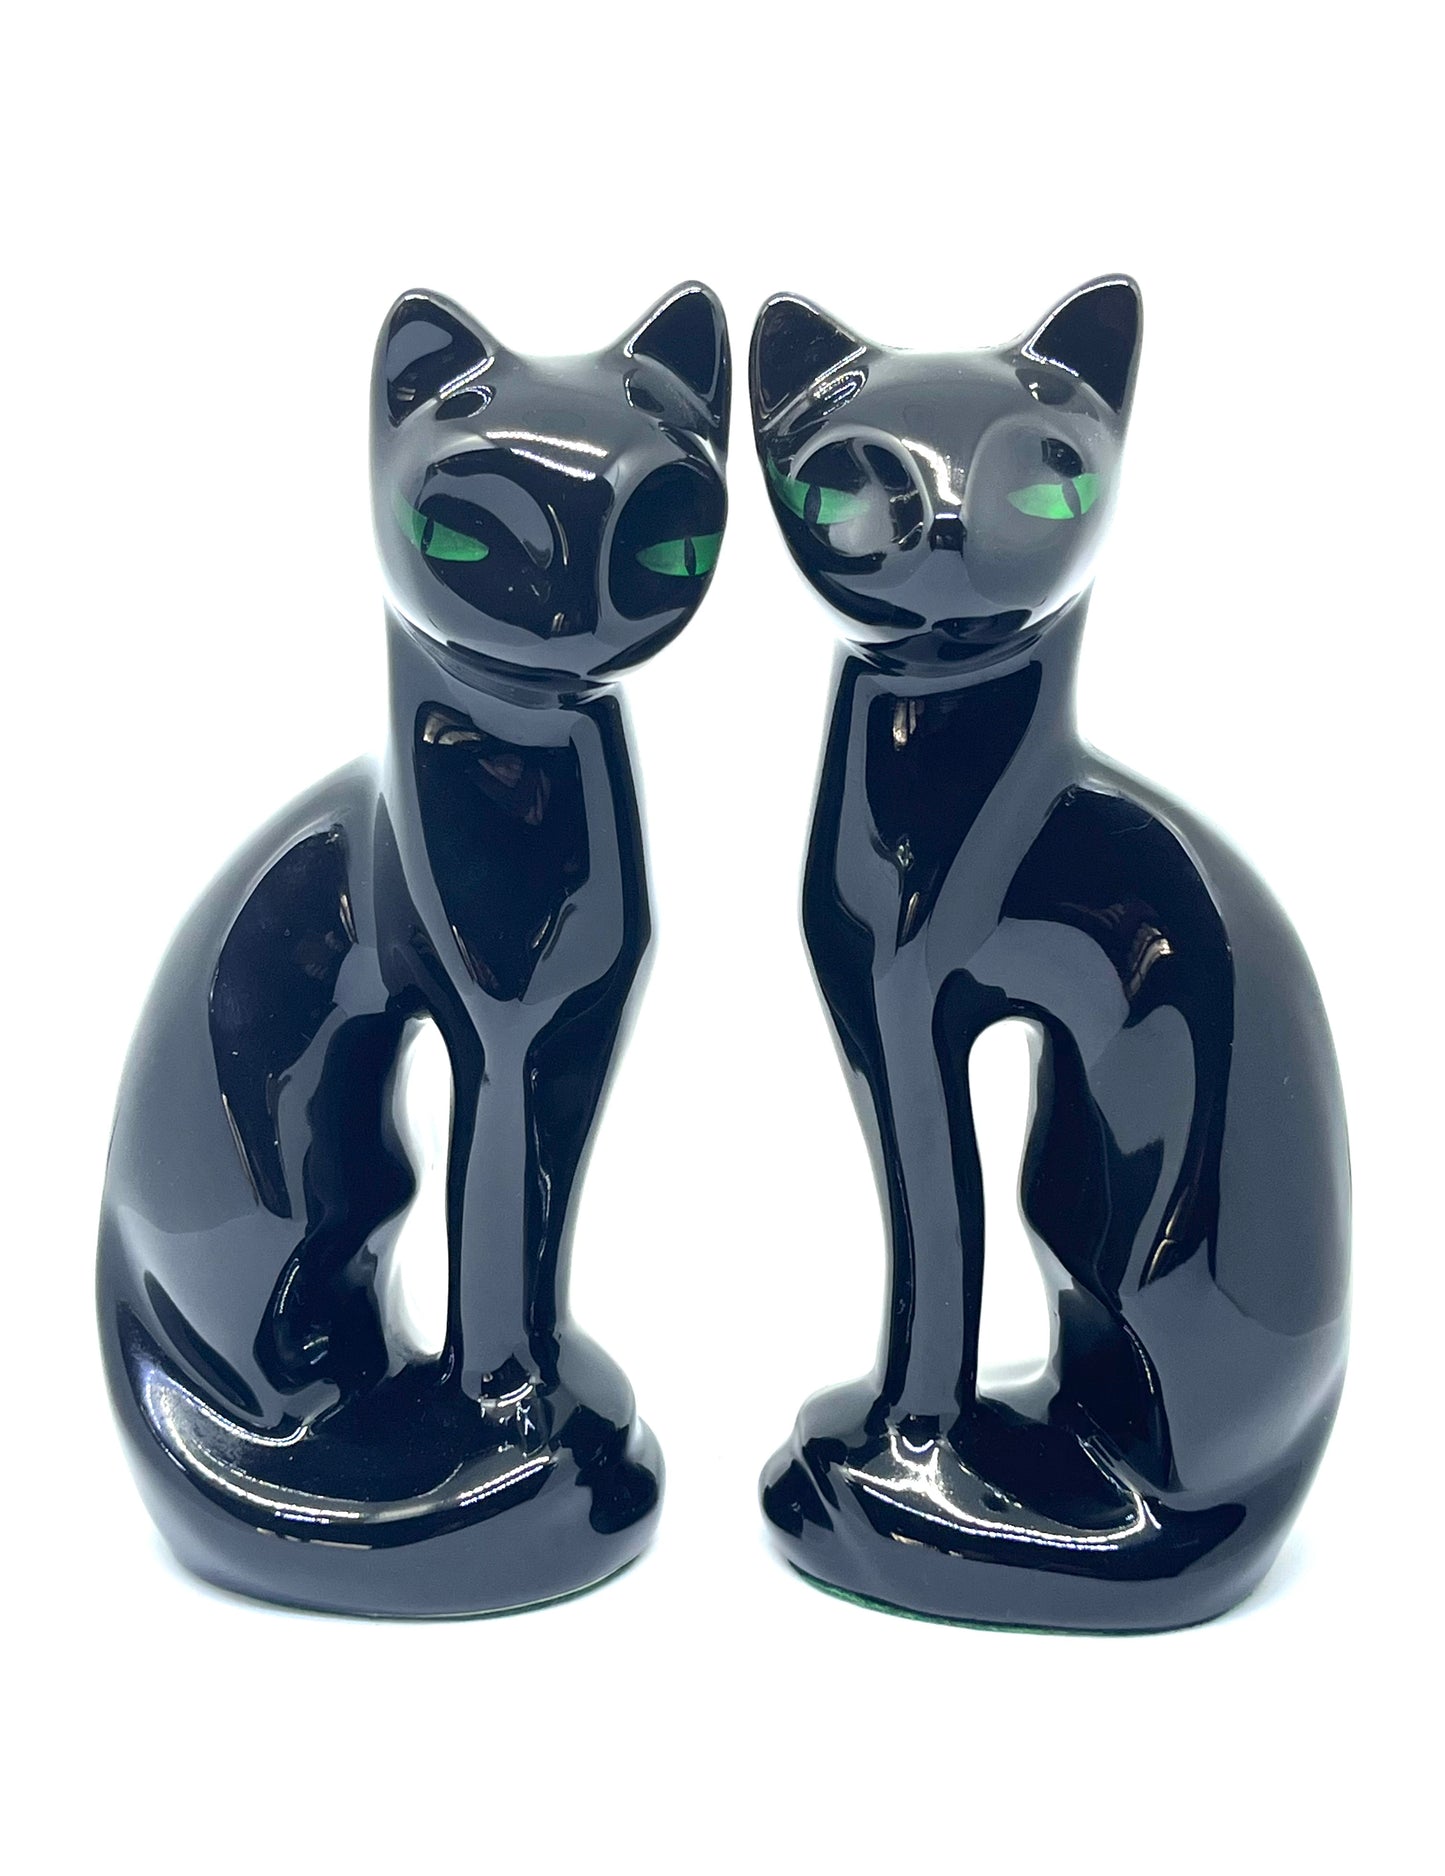 Twin Copperart 1980’s ceramic black Siamese cats